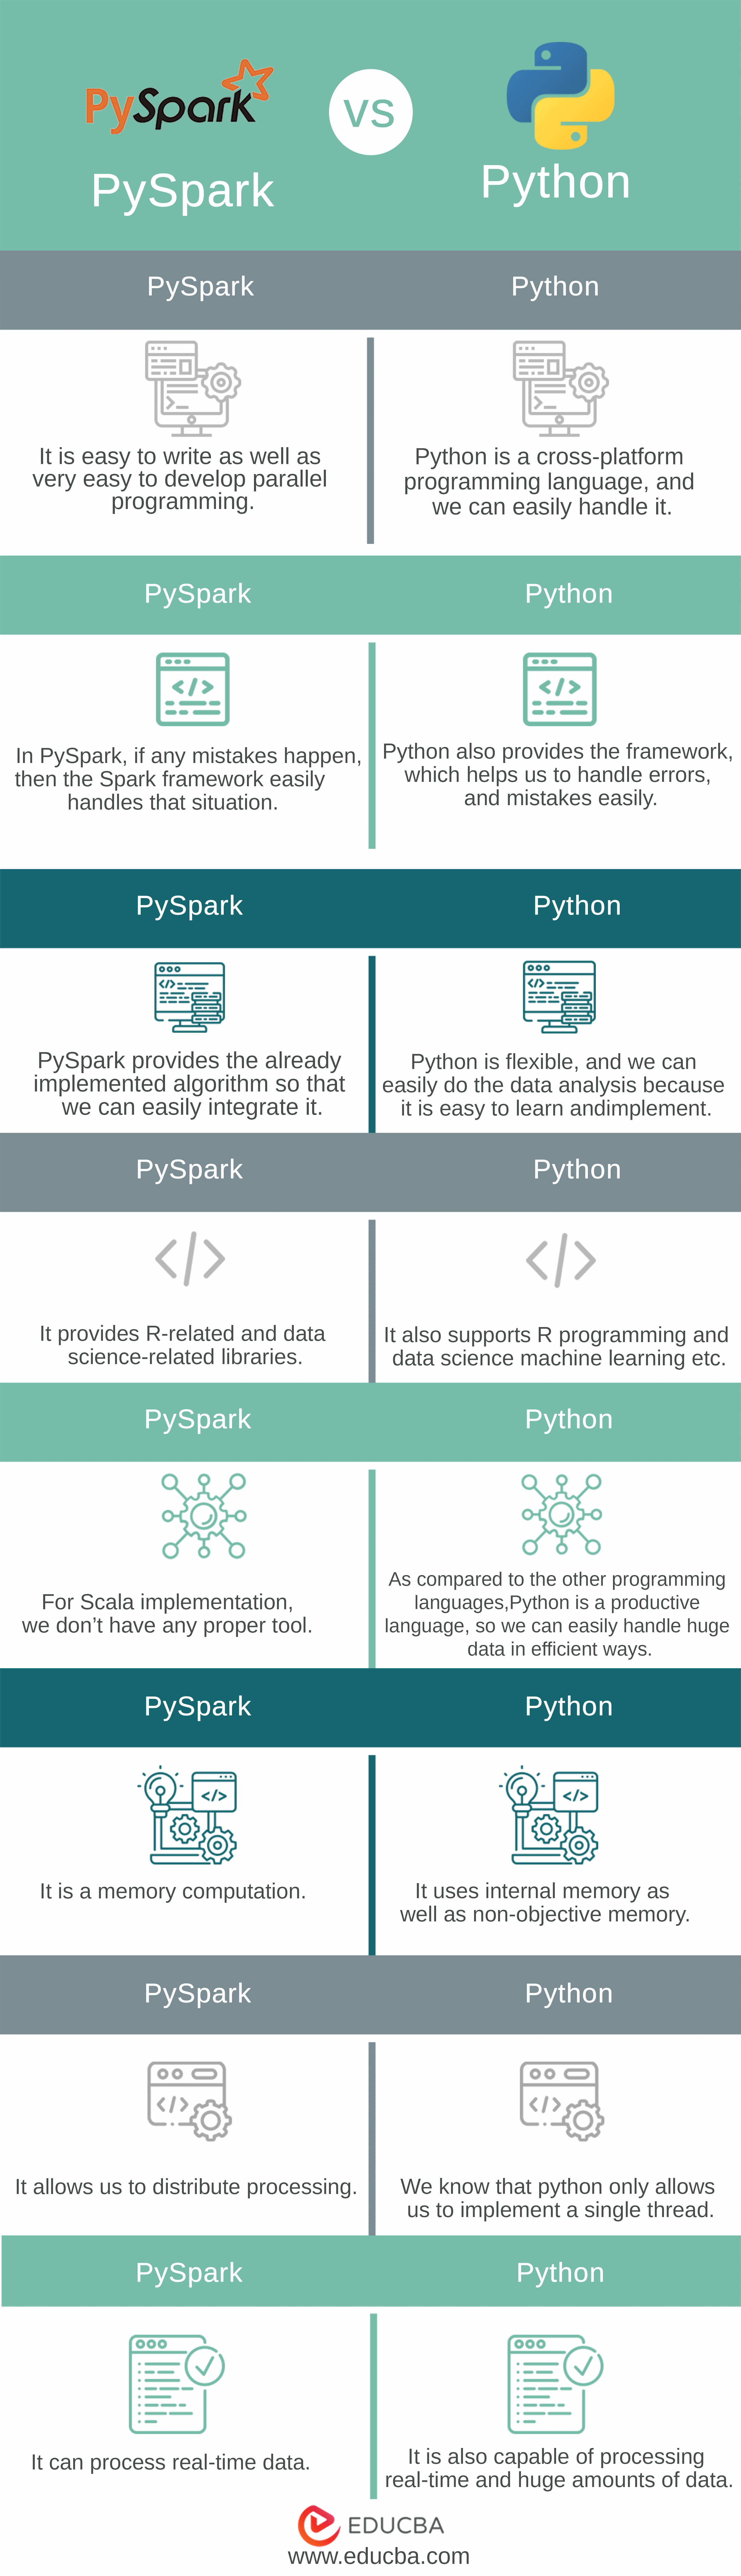 PySpark vs Python Info